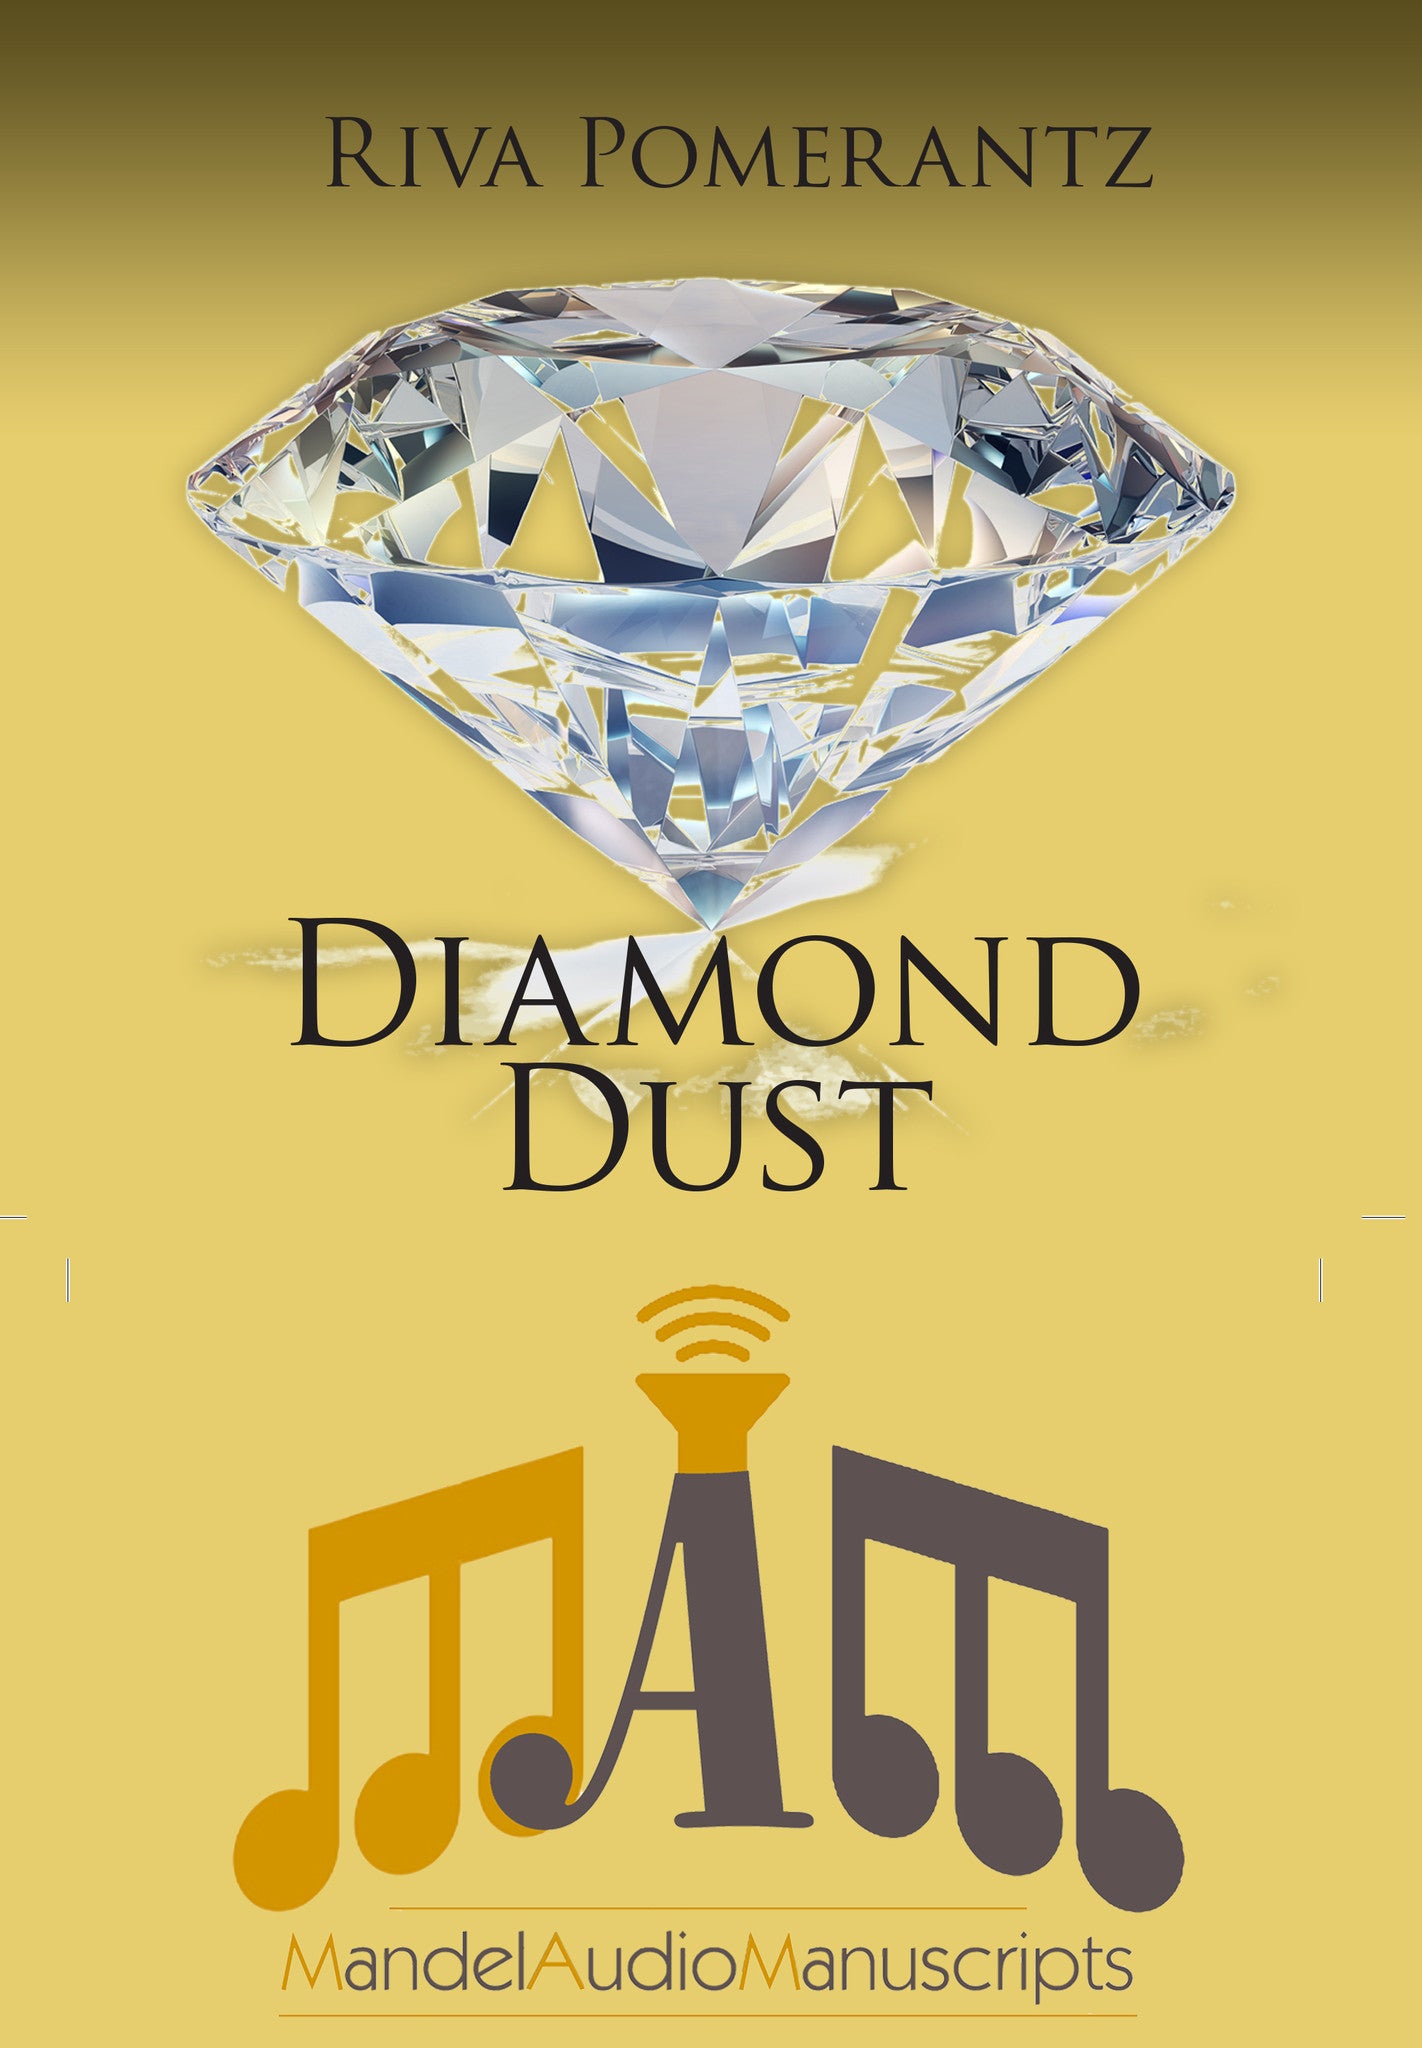 Riva Pomerantz - Diamond dust